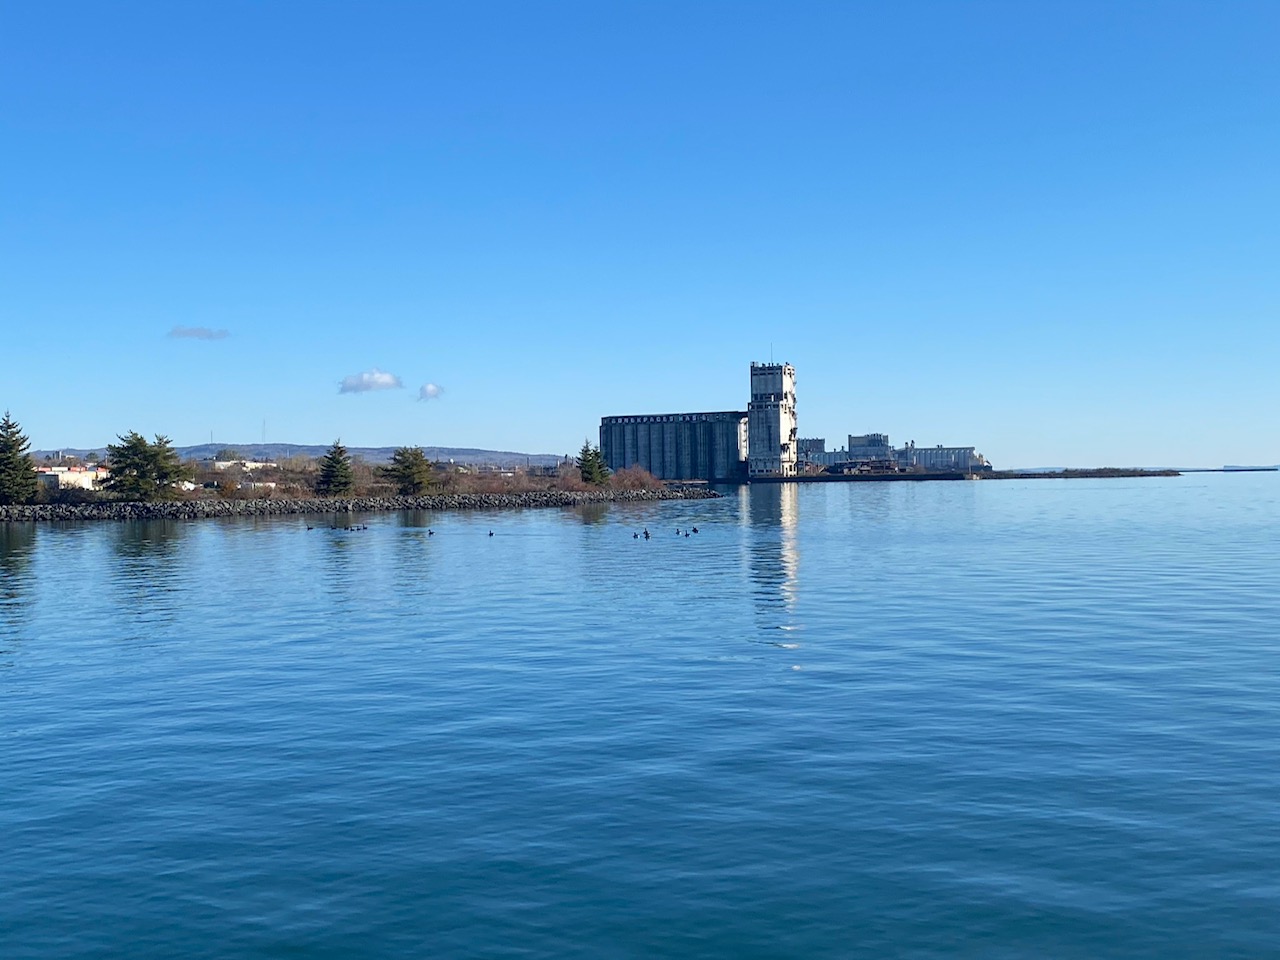 Le secteur riverain de Thunder Bay : de l'eau, un silo. L'eau est bleue comme le ciel.